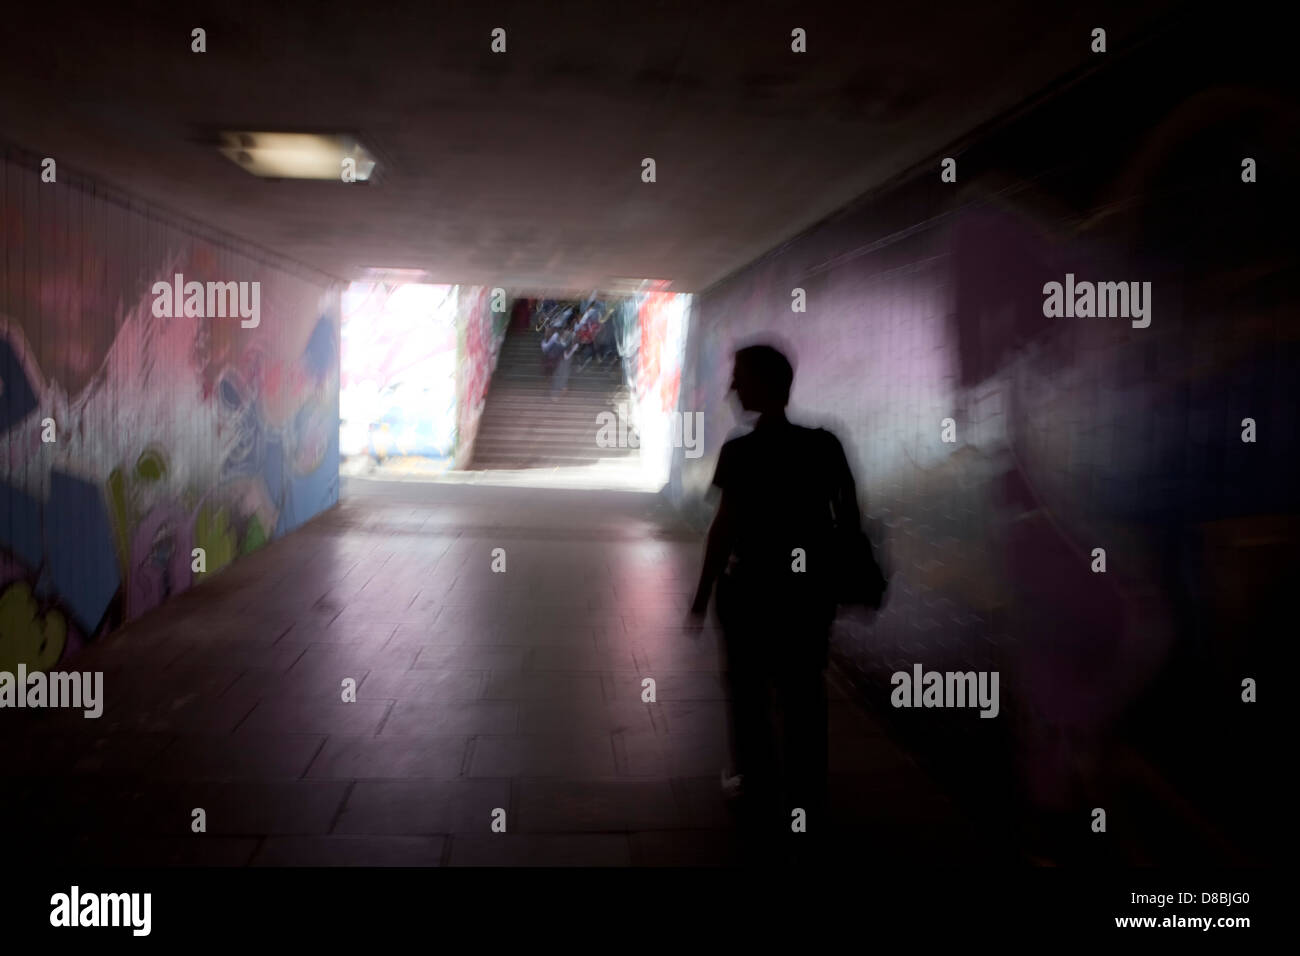 Un uomo che cammina in un tunnel scuro con graffiti, immagine simbolica di panico, Trier, Renania-Palatinato, Germania, Europa Foto Stock